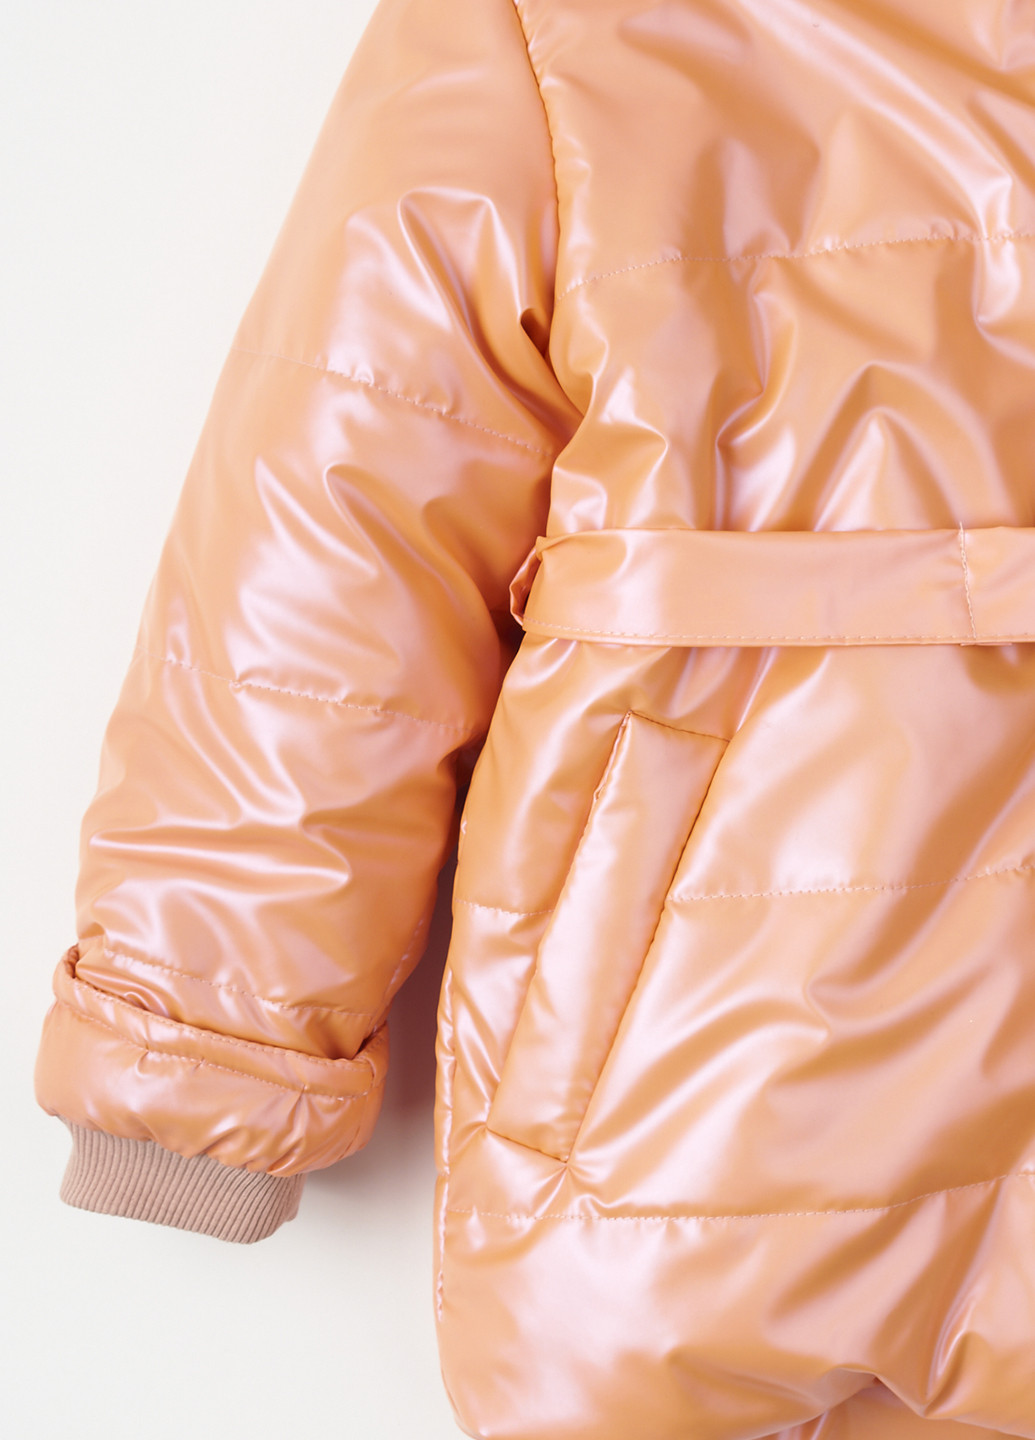 Світло-оранжева зимня куртка Одягайко